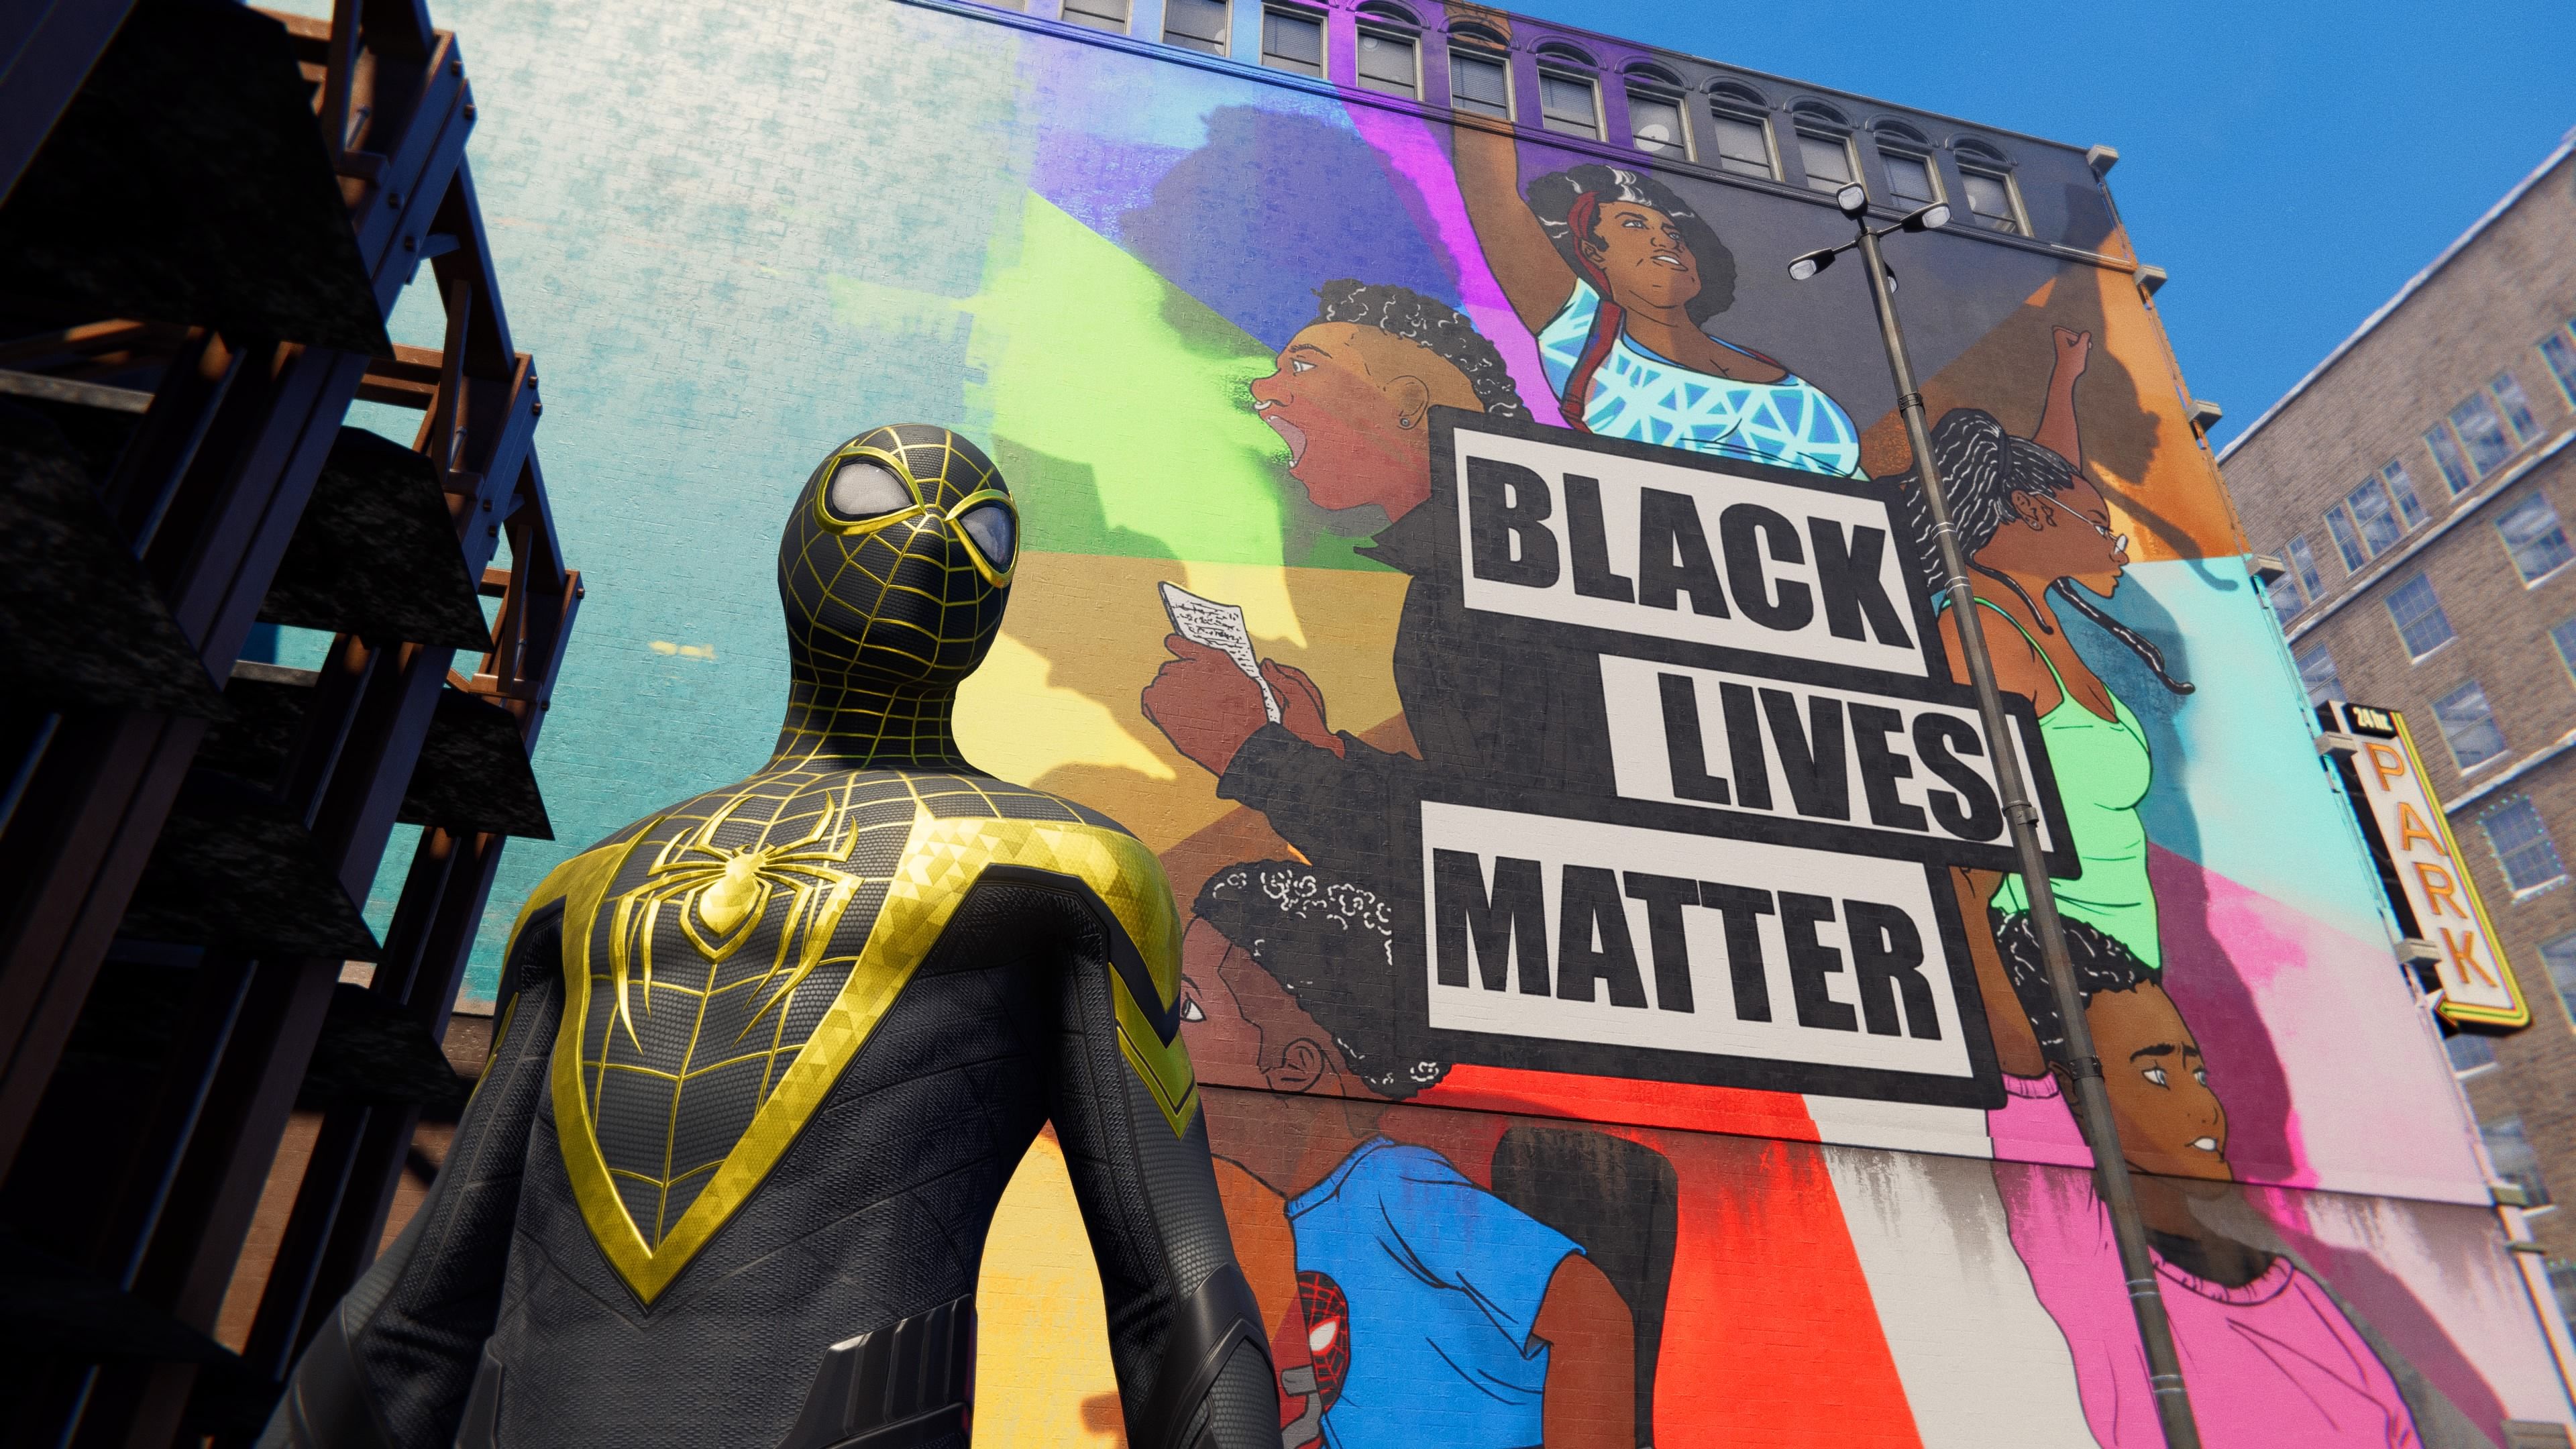 То самое граффити и костюм, который подарило сообщество Гарлема новому защитнику спокойствия